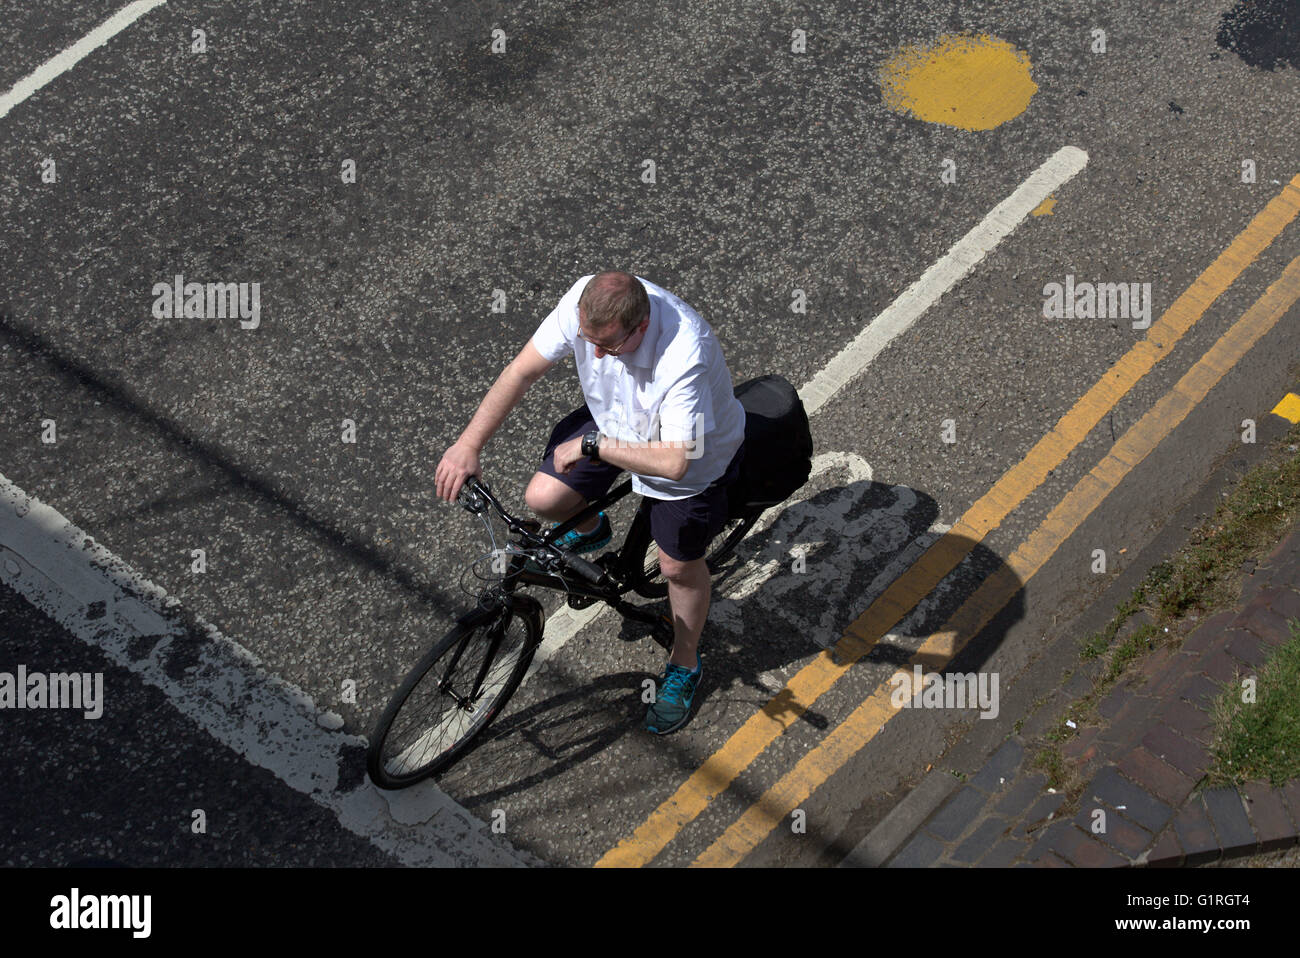 Mann mittleren Alters Radfahrer Fahrrad Blick auf Uhr auf einer Stadt Ecke Ampel wartende gesehen von oben, Glasgow, Scotland, UK Stockfoto